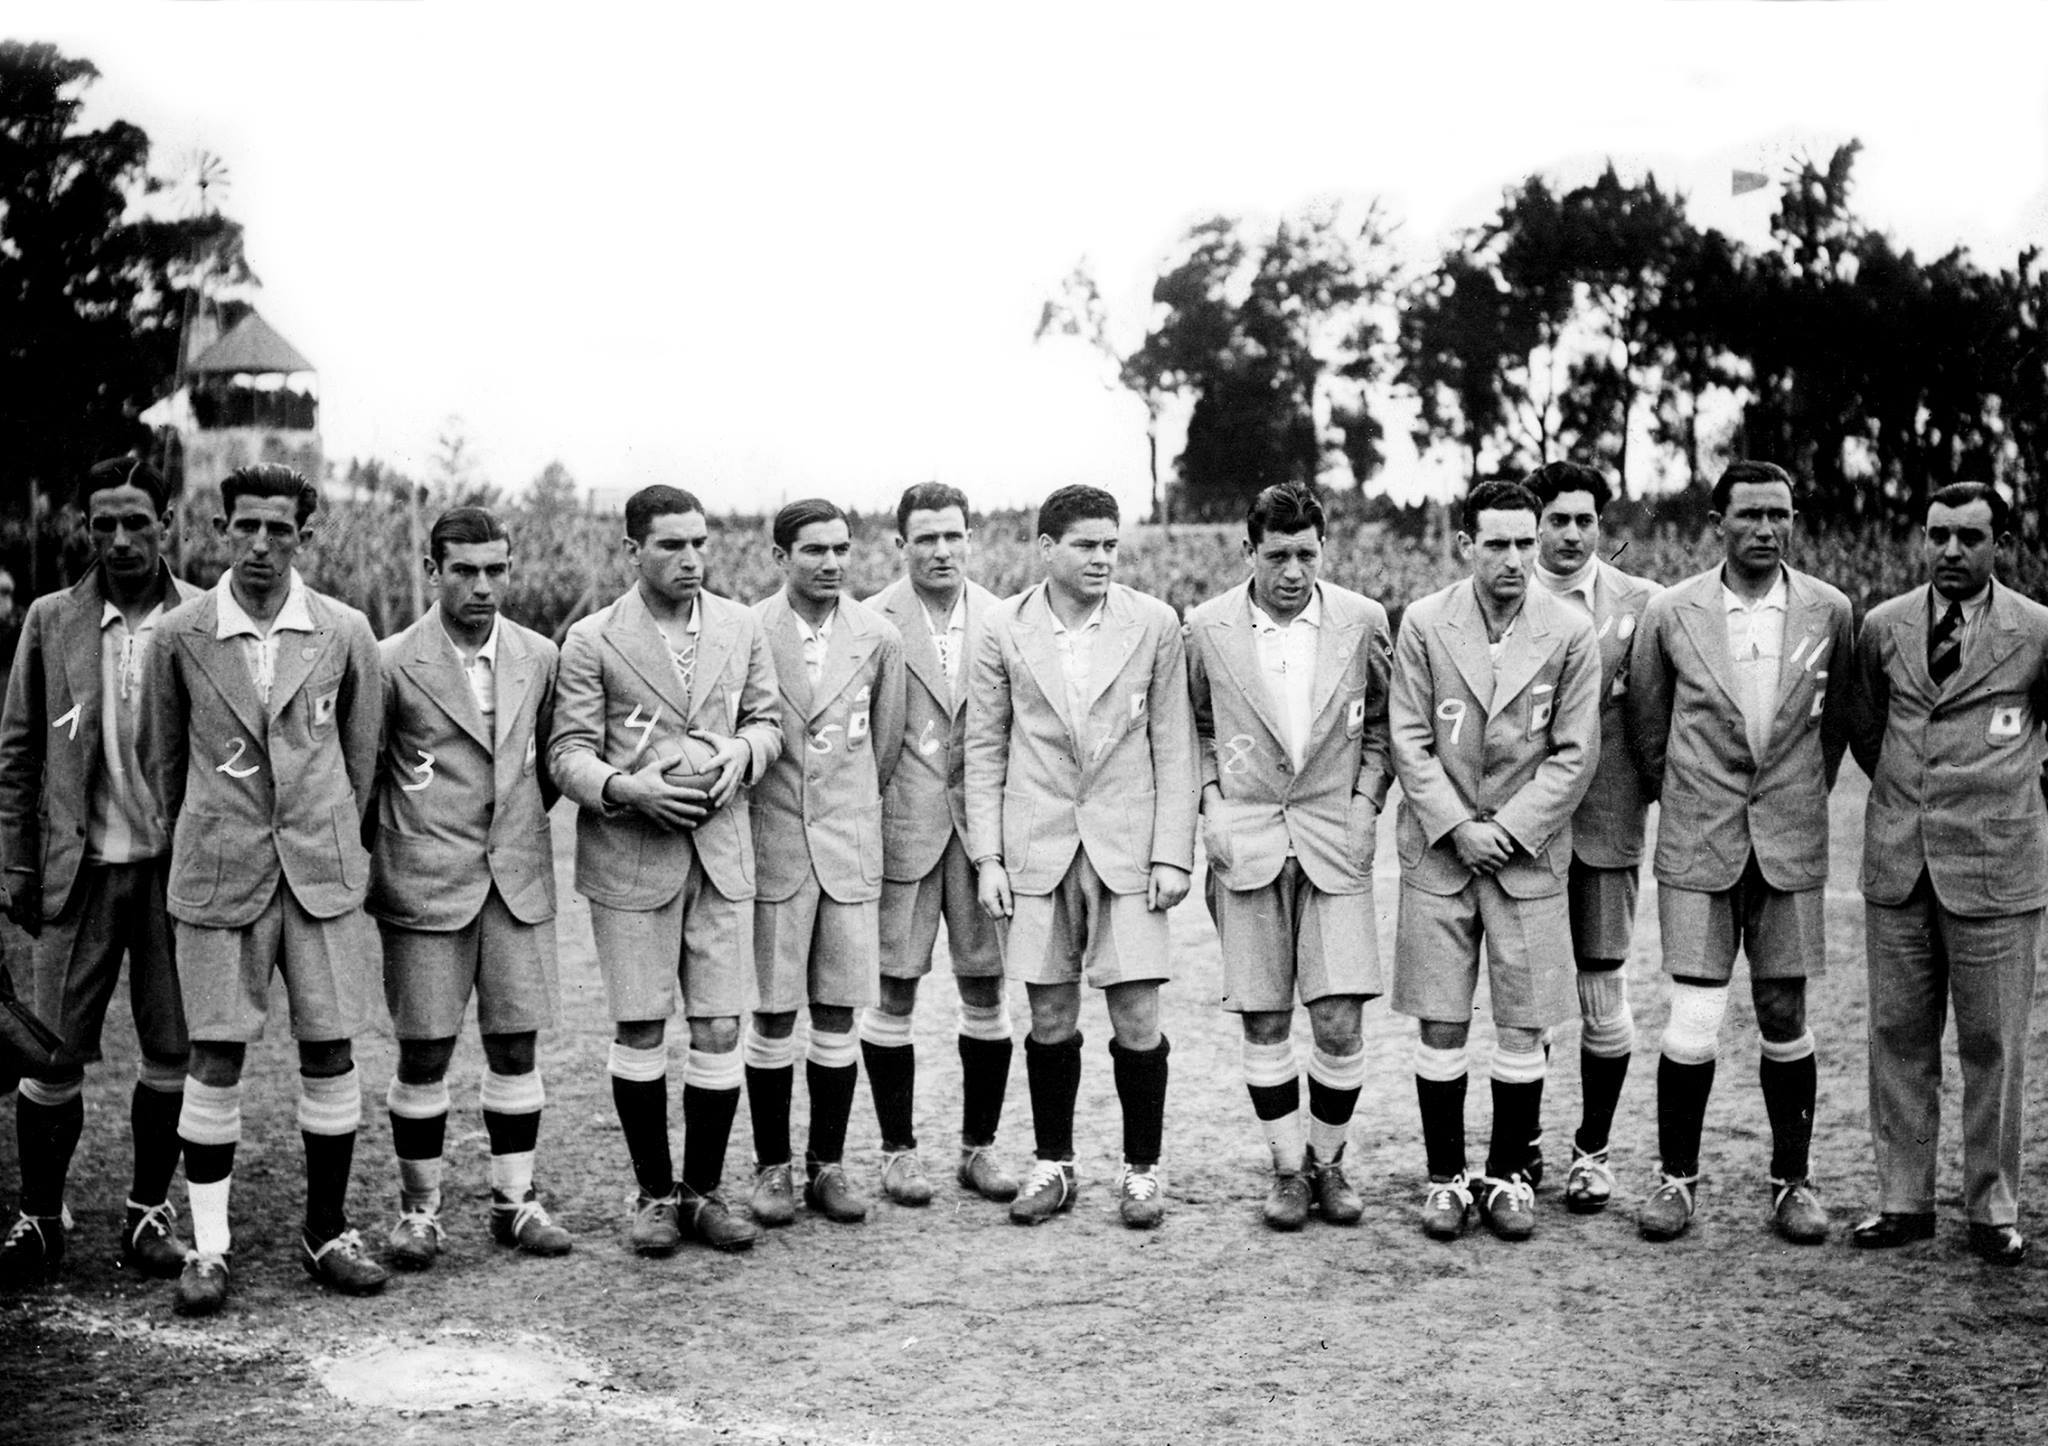 Uruguay 1930: el Mundial con el que empezó todo 